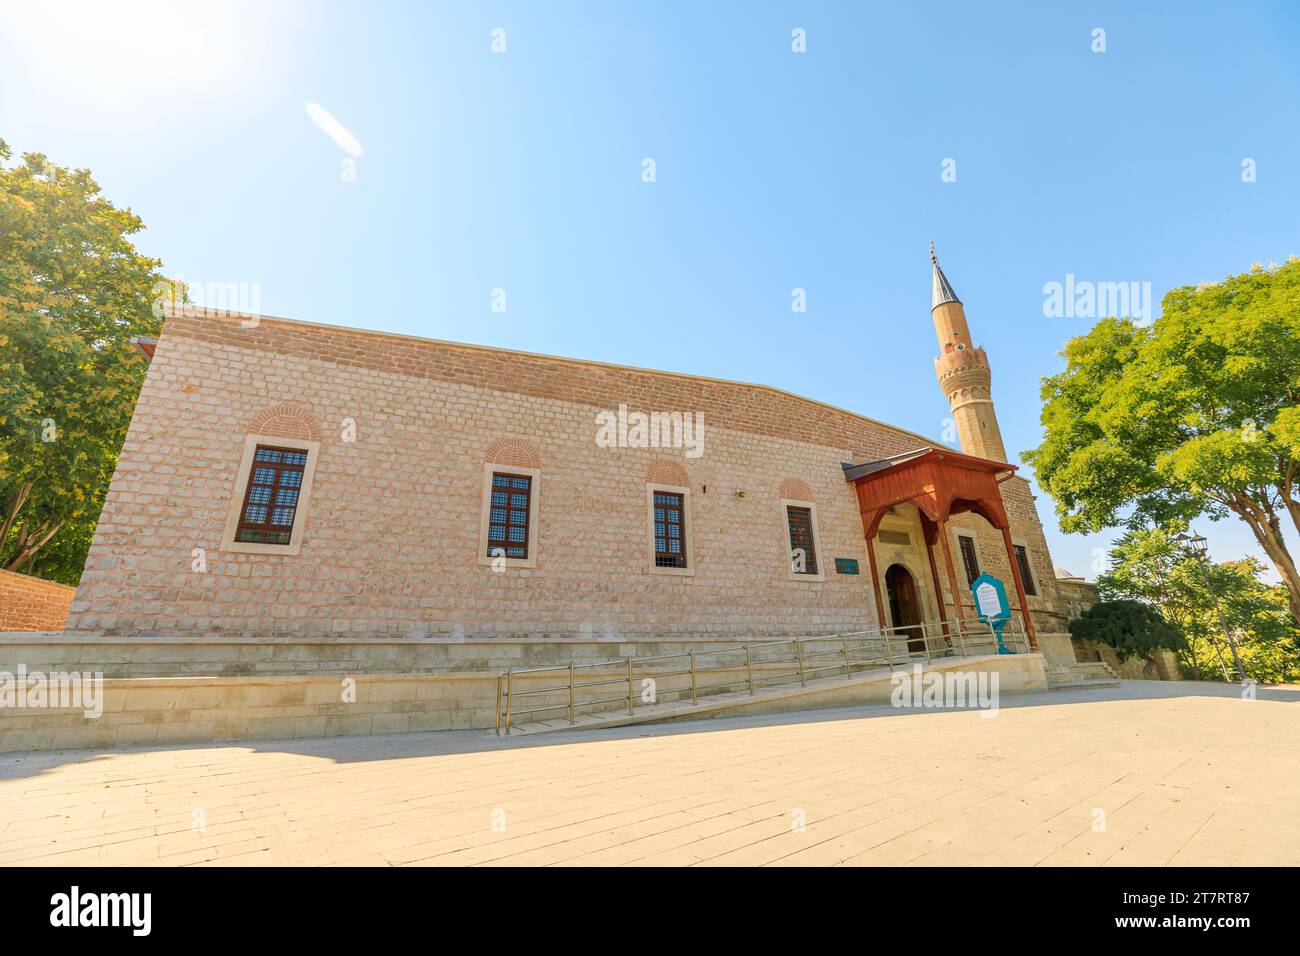 La mosquée Alaeddin Keykubad à Konya, en Turquie, fascine par ses motifs géométriques complexes, ses arcs gracieux, son minaret imposant, mettant en valeur l'islam Banque D'Images